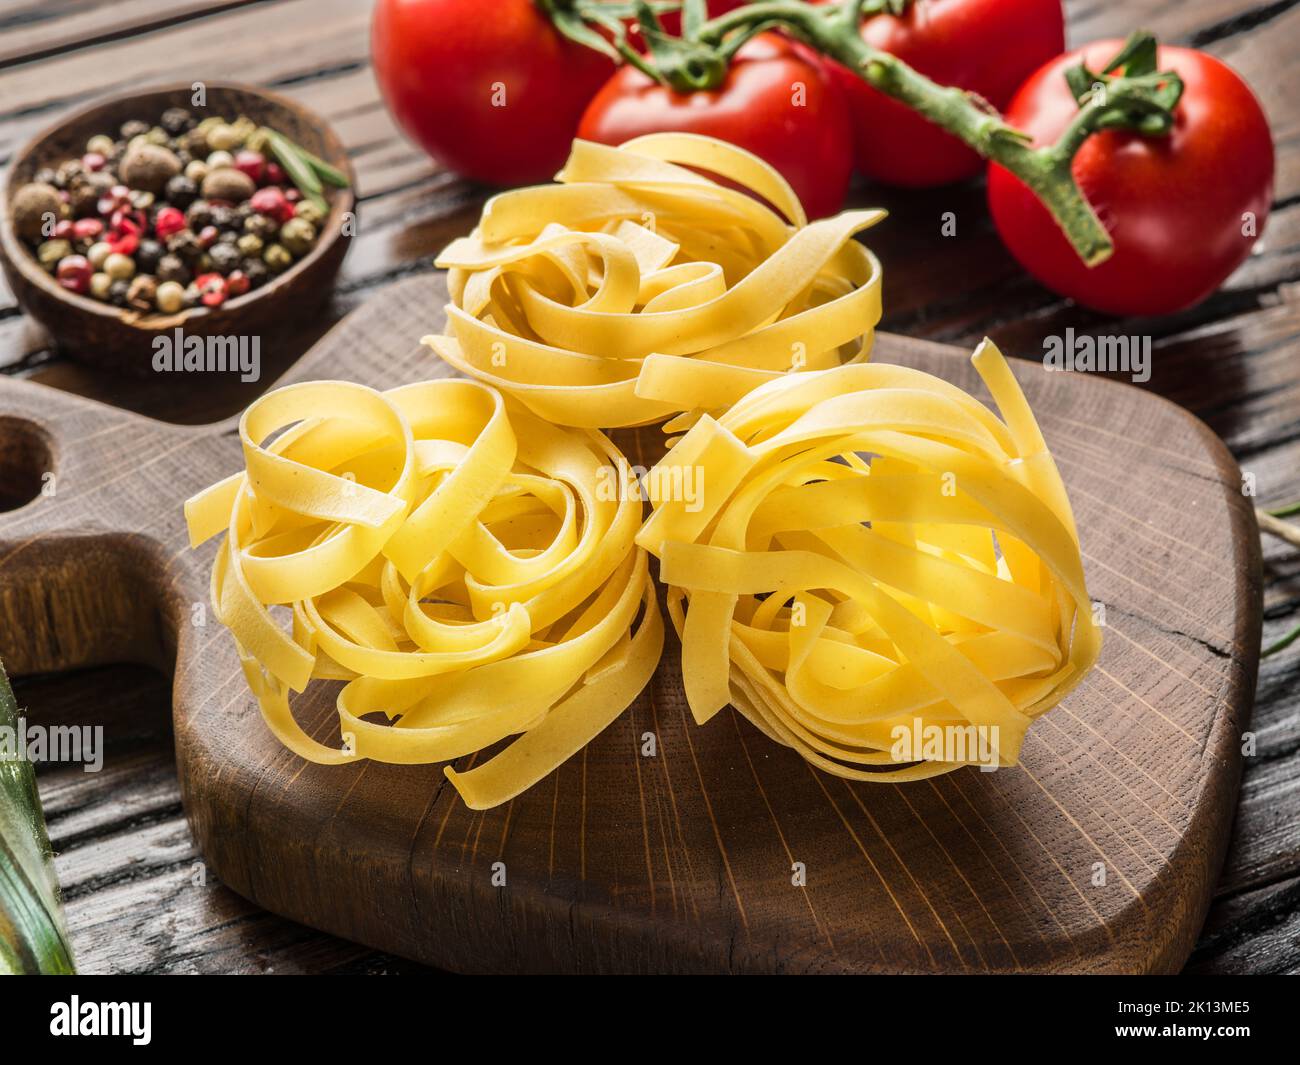 Tagliatelle pasta on wooden board close-up. Stock Photo